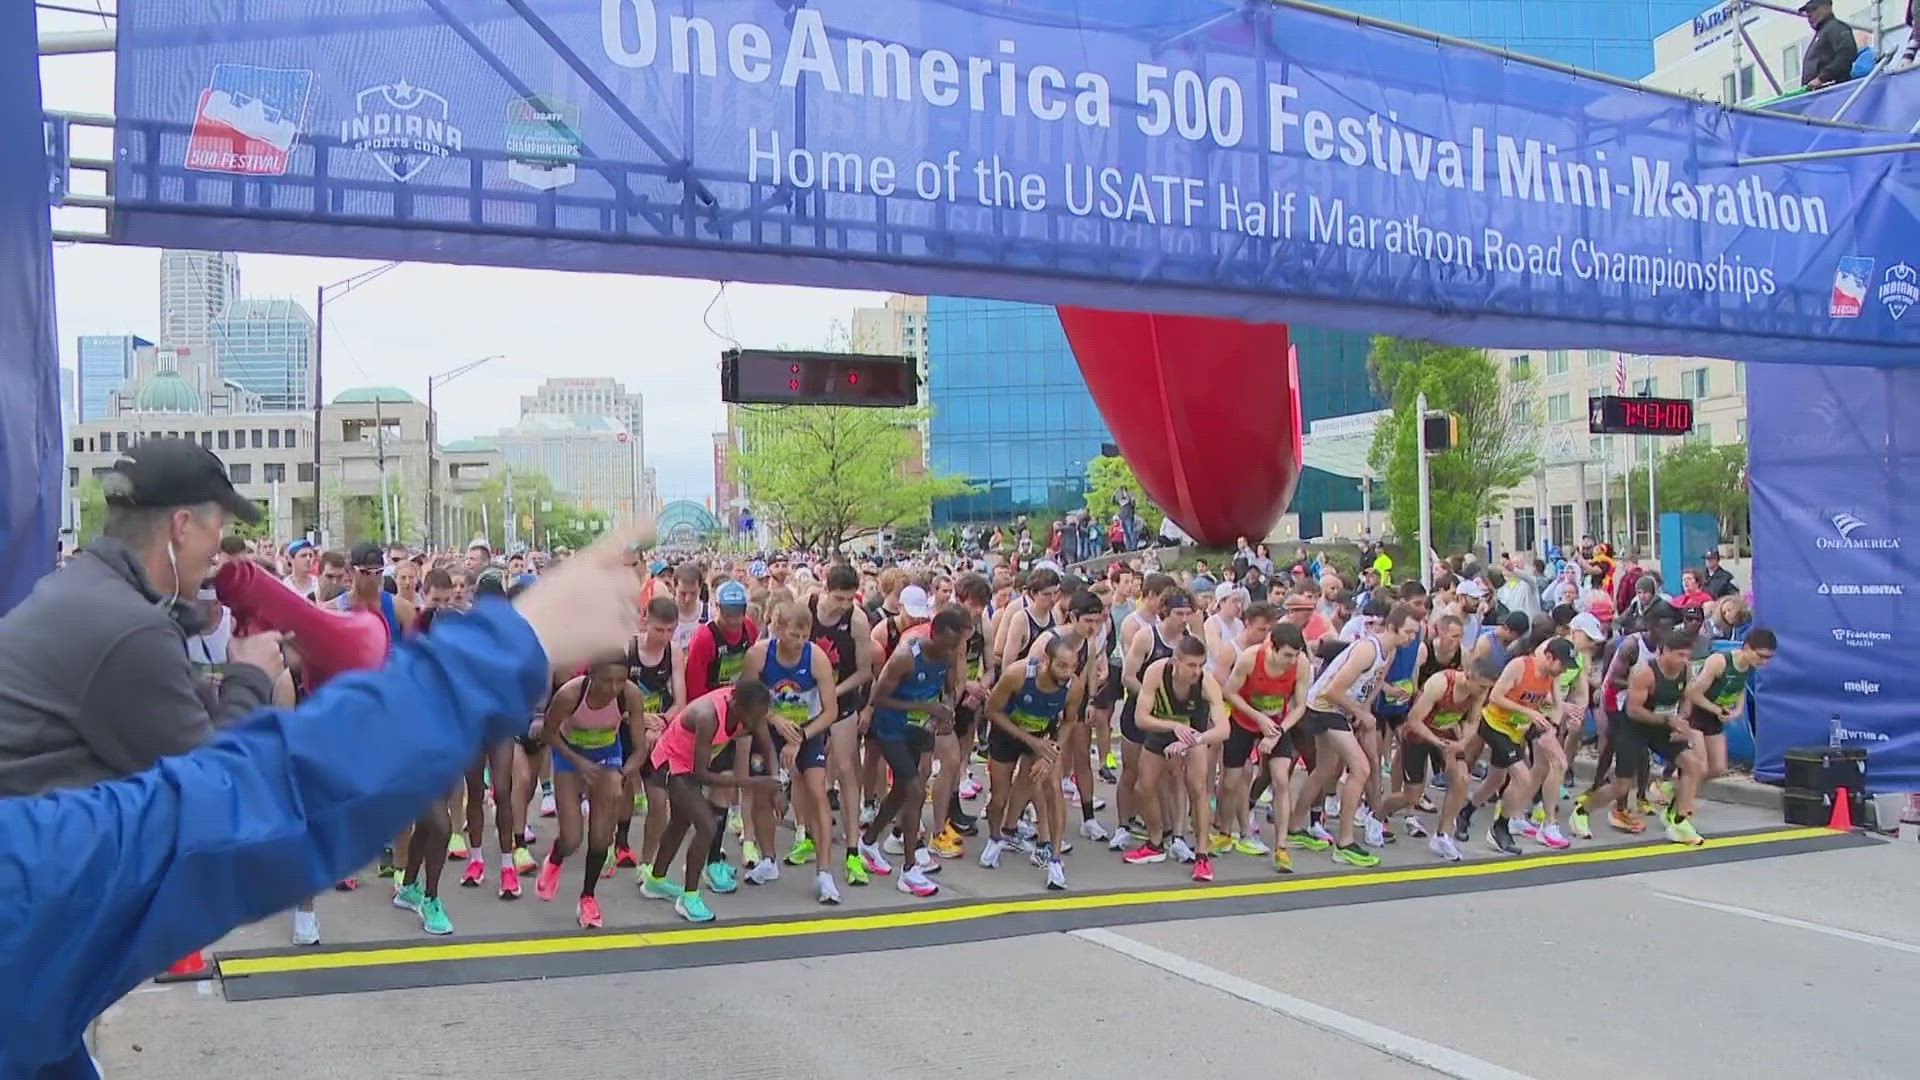 Indy MiniMarathon named best halfmarathon in the United States